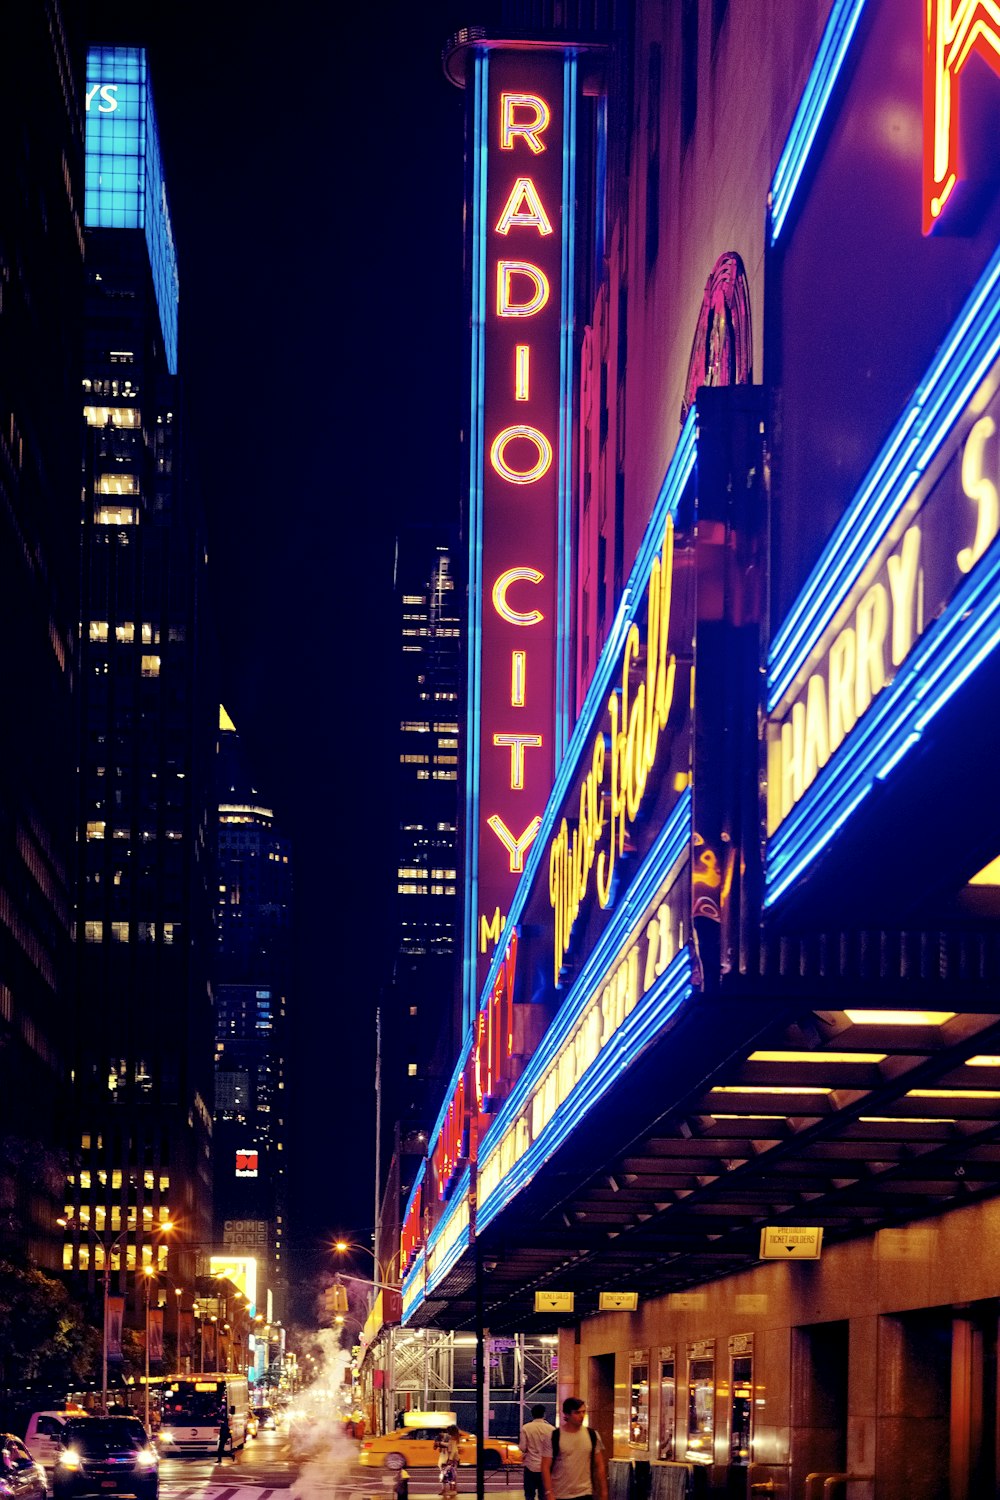 señalización iluminada de Radio City